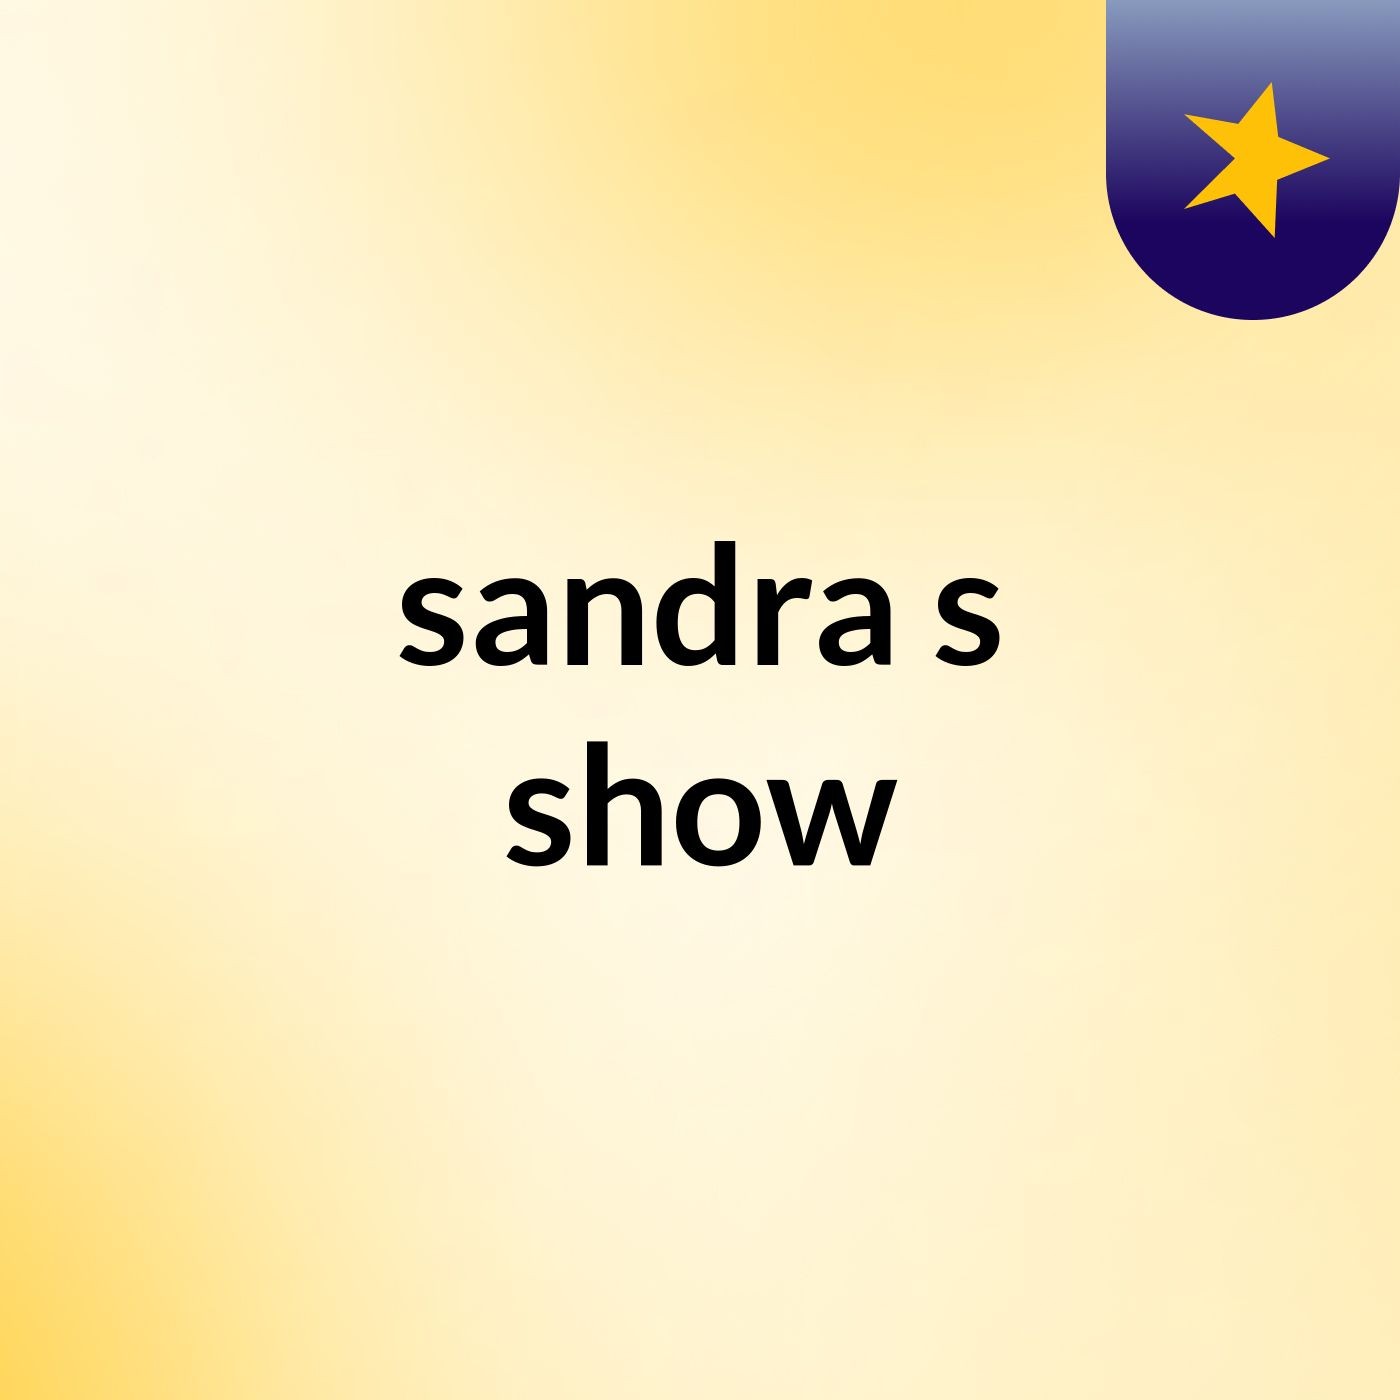 sandra's show